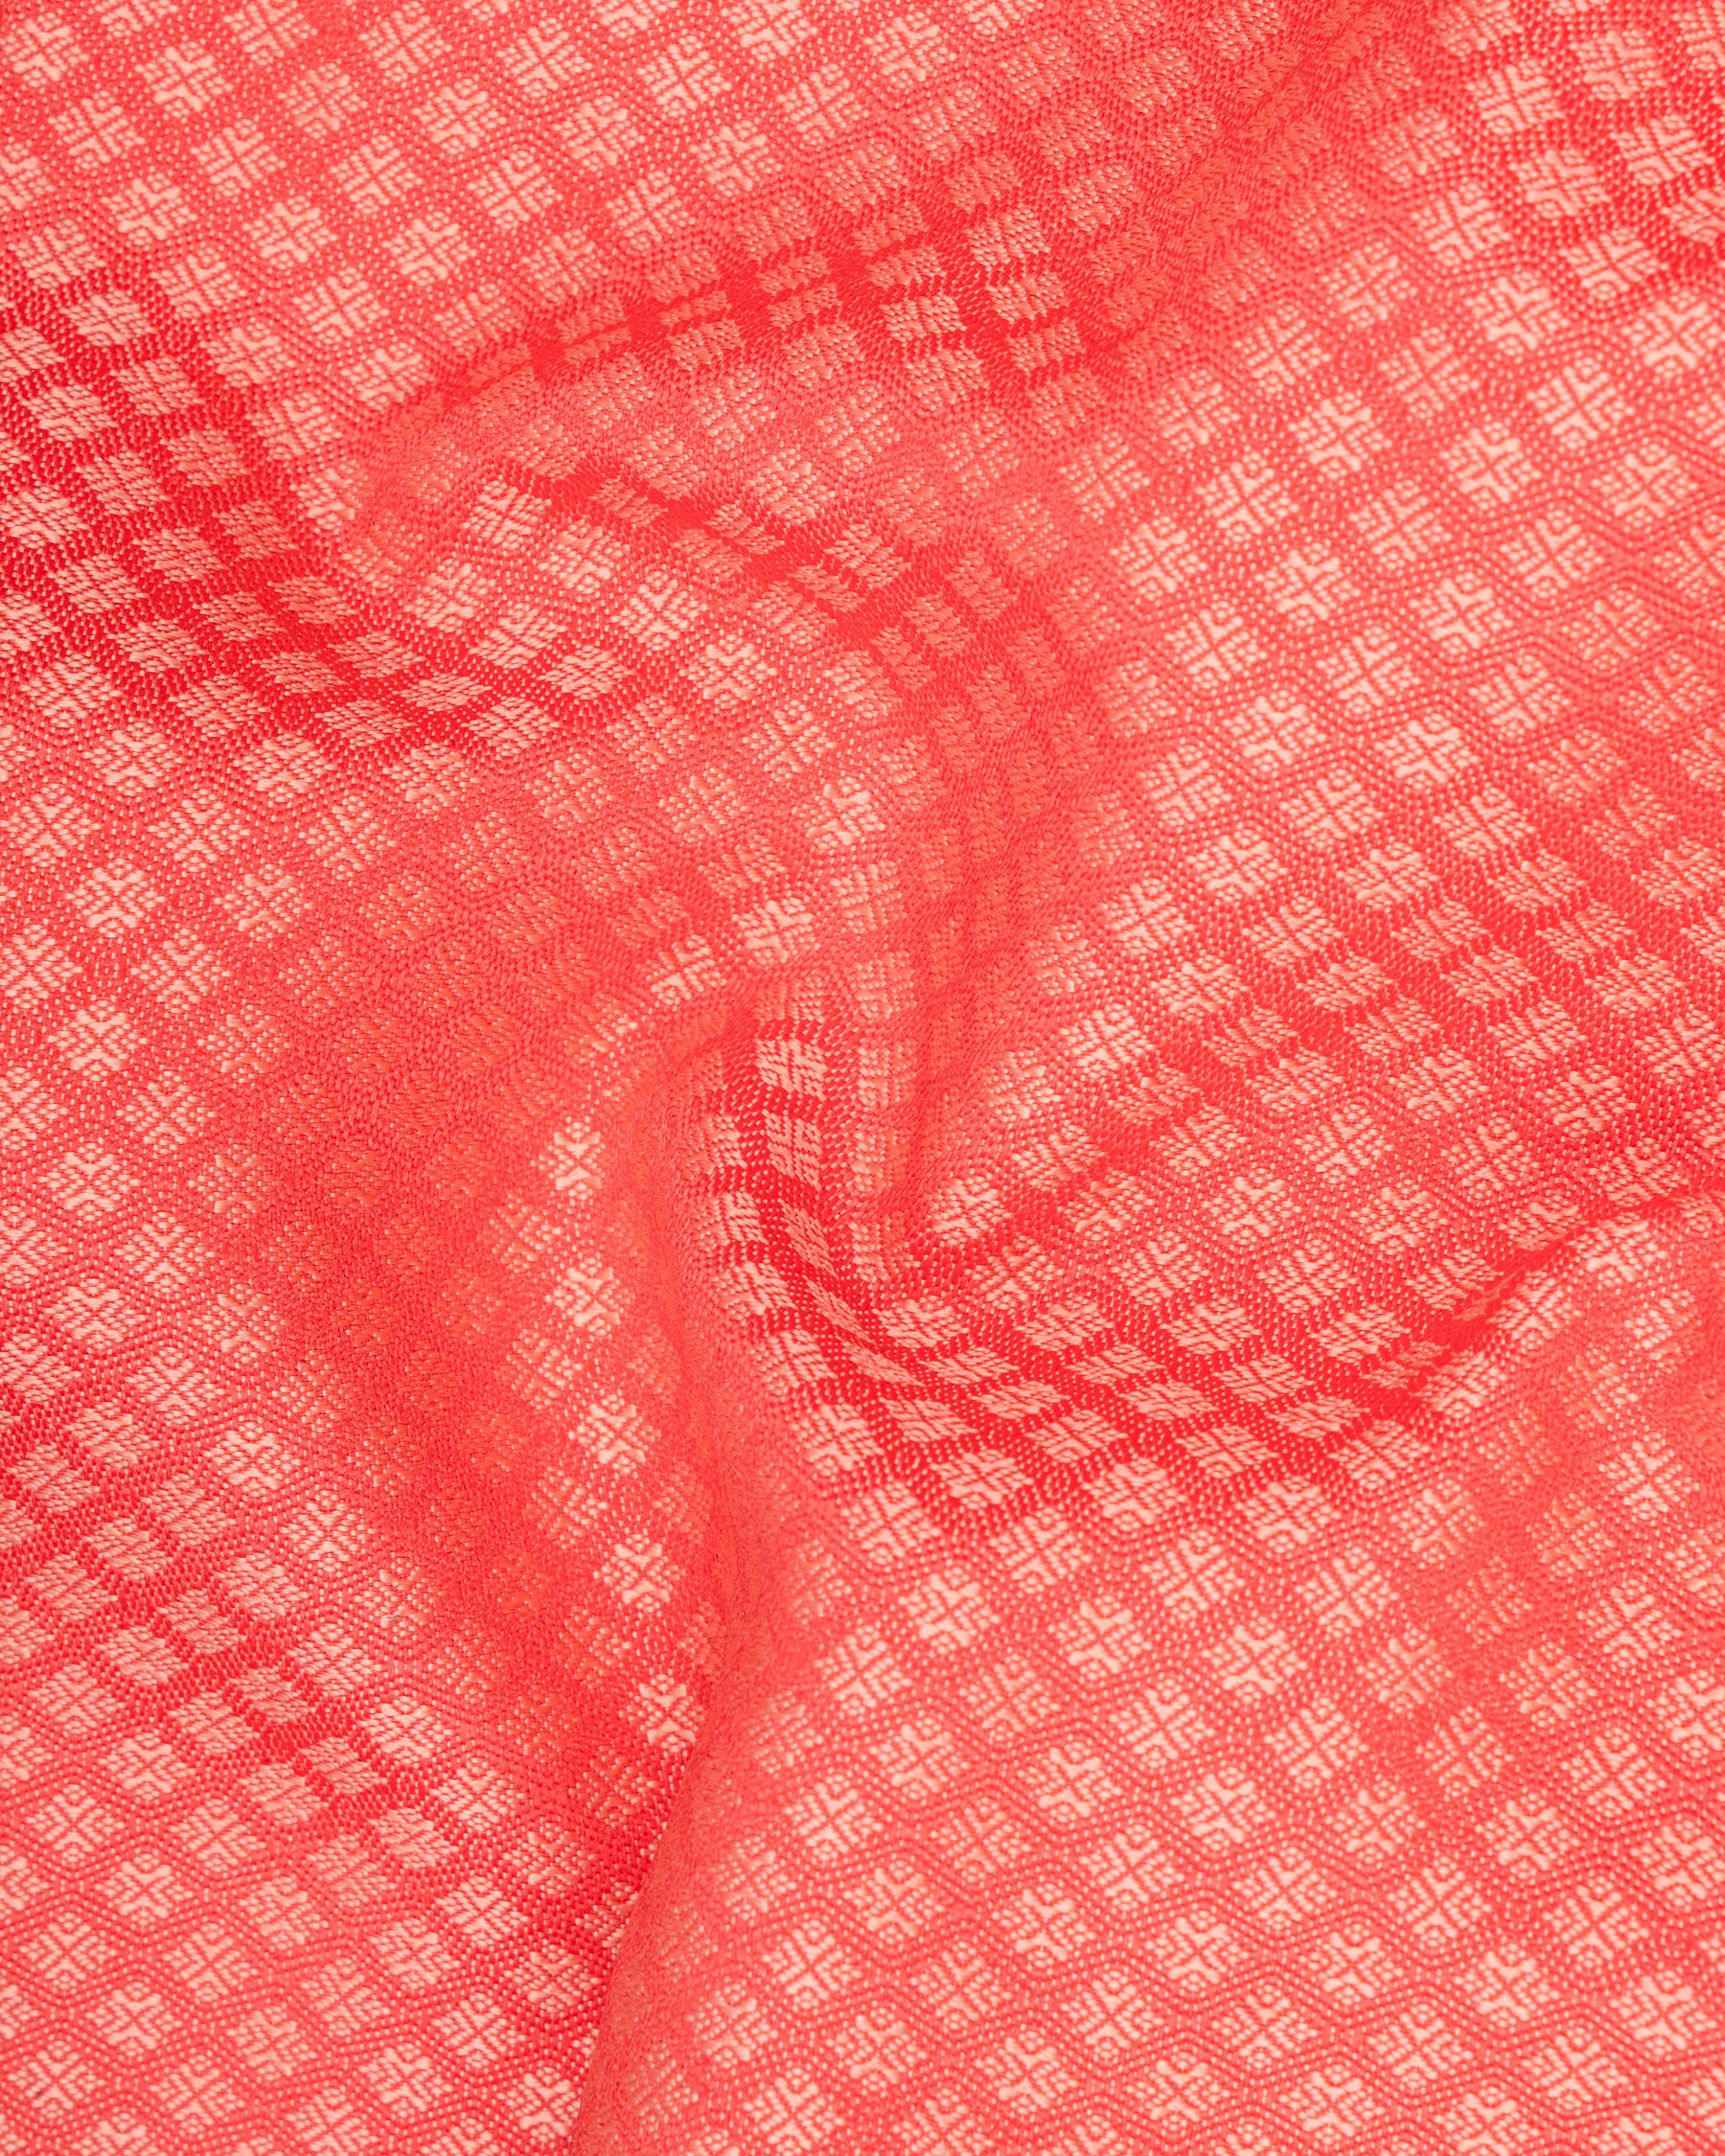 Bittersweet Pink Textured Nehru Jacket WC1656-36, WC1656-38, WC1656-40, WC1656-42, WC1656-44, WC1656-46, WC1656-48, WC1656-50, WC1656-52, WC1656-54, WC1656-56, WC1656-58, WC1656-60